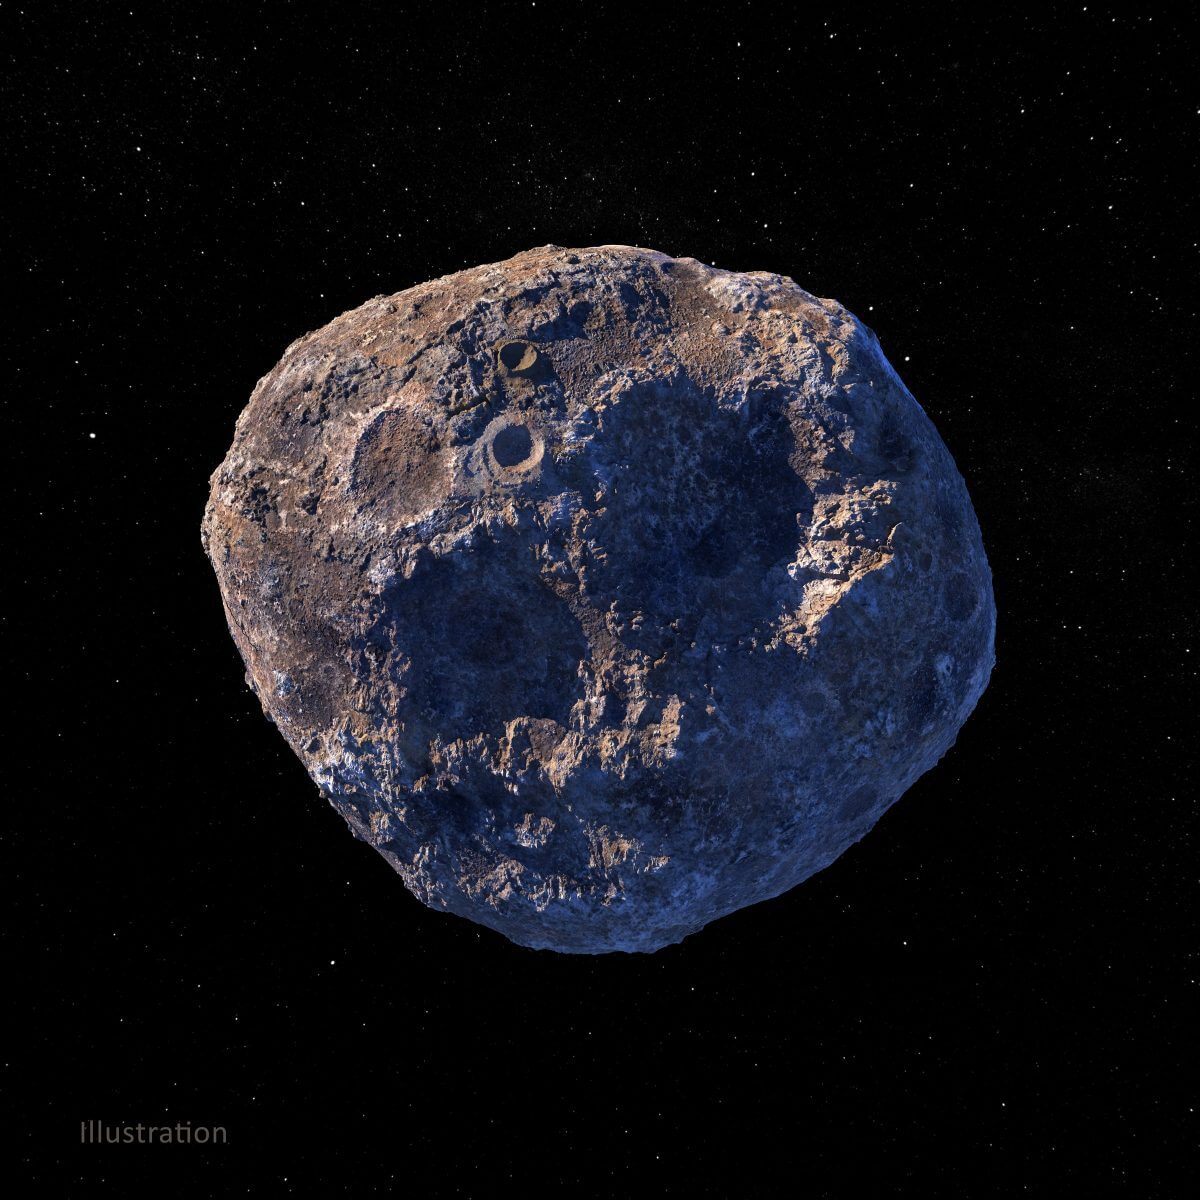 小惑星プシケを描いた想像図1